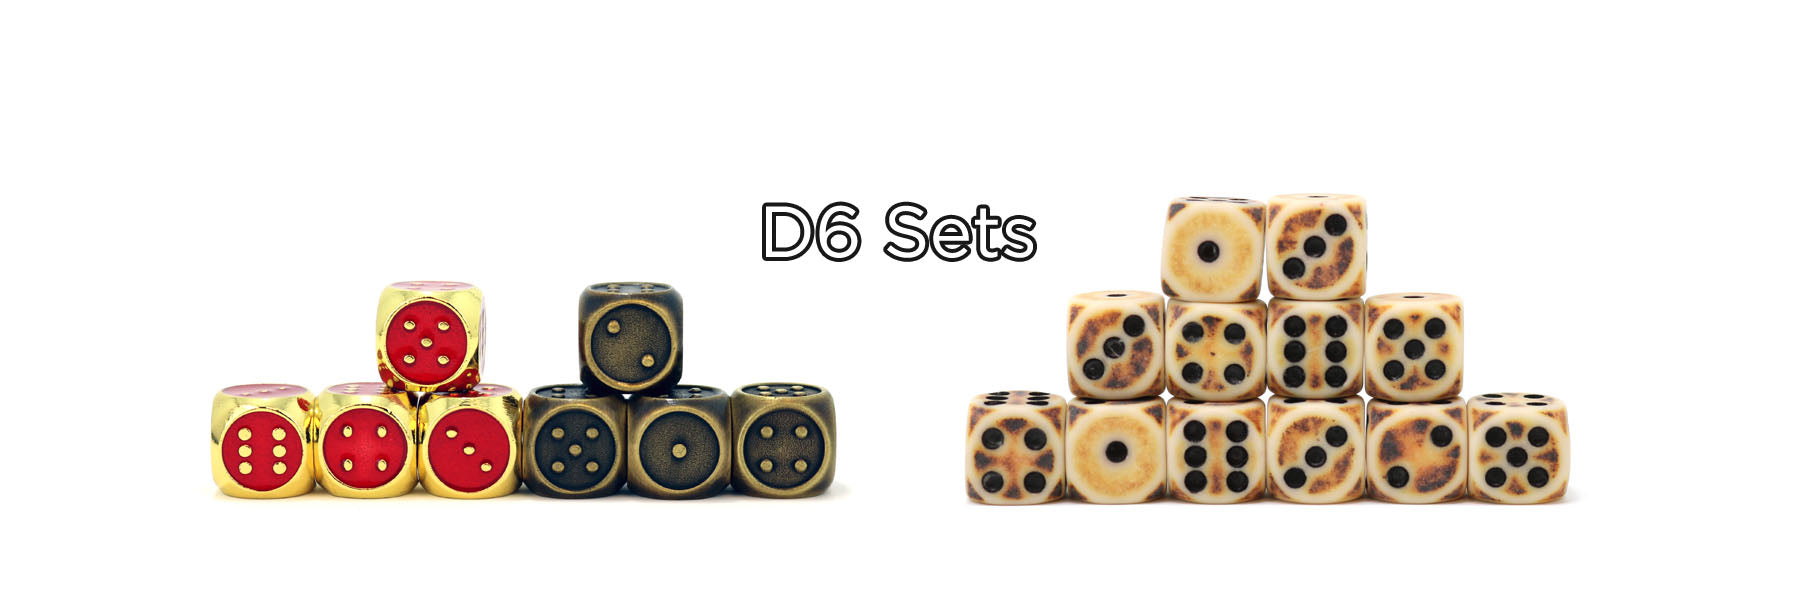 D6 Dice Sets